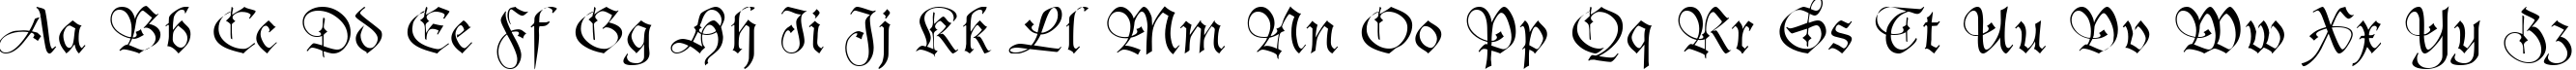 Пример написания английского алфавита шрифтом Sanasoft Gothic.kz